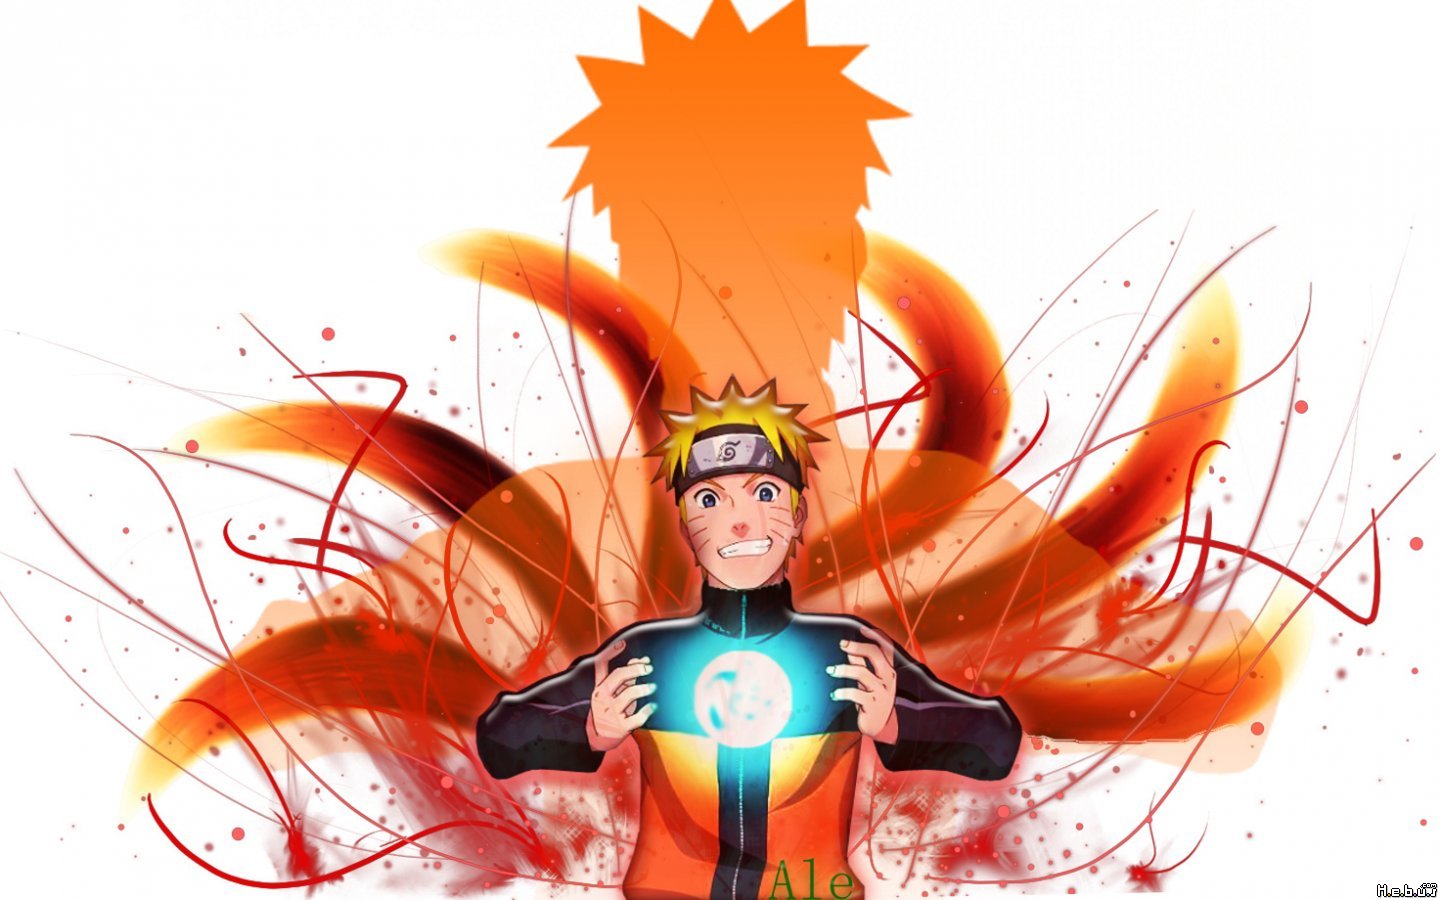 Hình nền Naruto trên nền trắng sẽ mang lại cảm giác thư giãn và thanh lịch cho màn hình của bạn. Với thiết kế đơn giản và tinh tế, hình nền này thực sự là một lựa chọn tuyệt vời cho những người yêu thích Naruto.